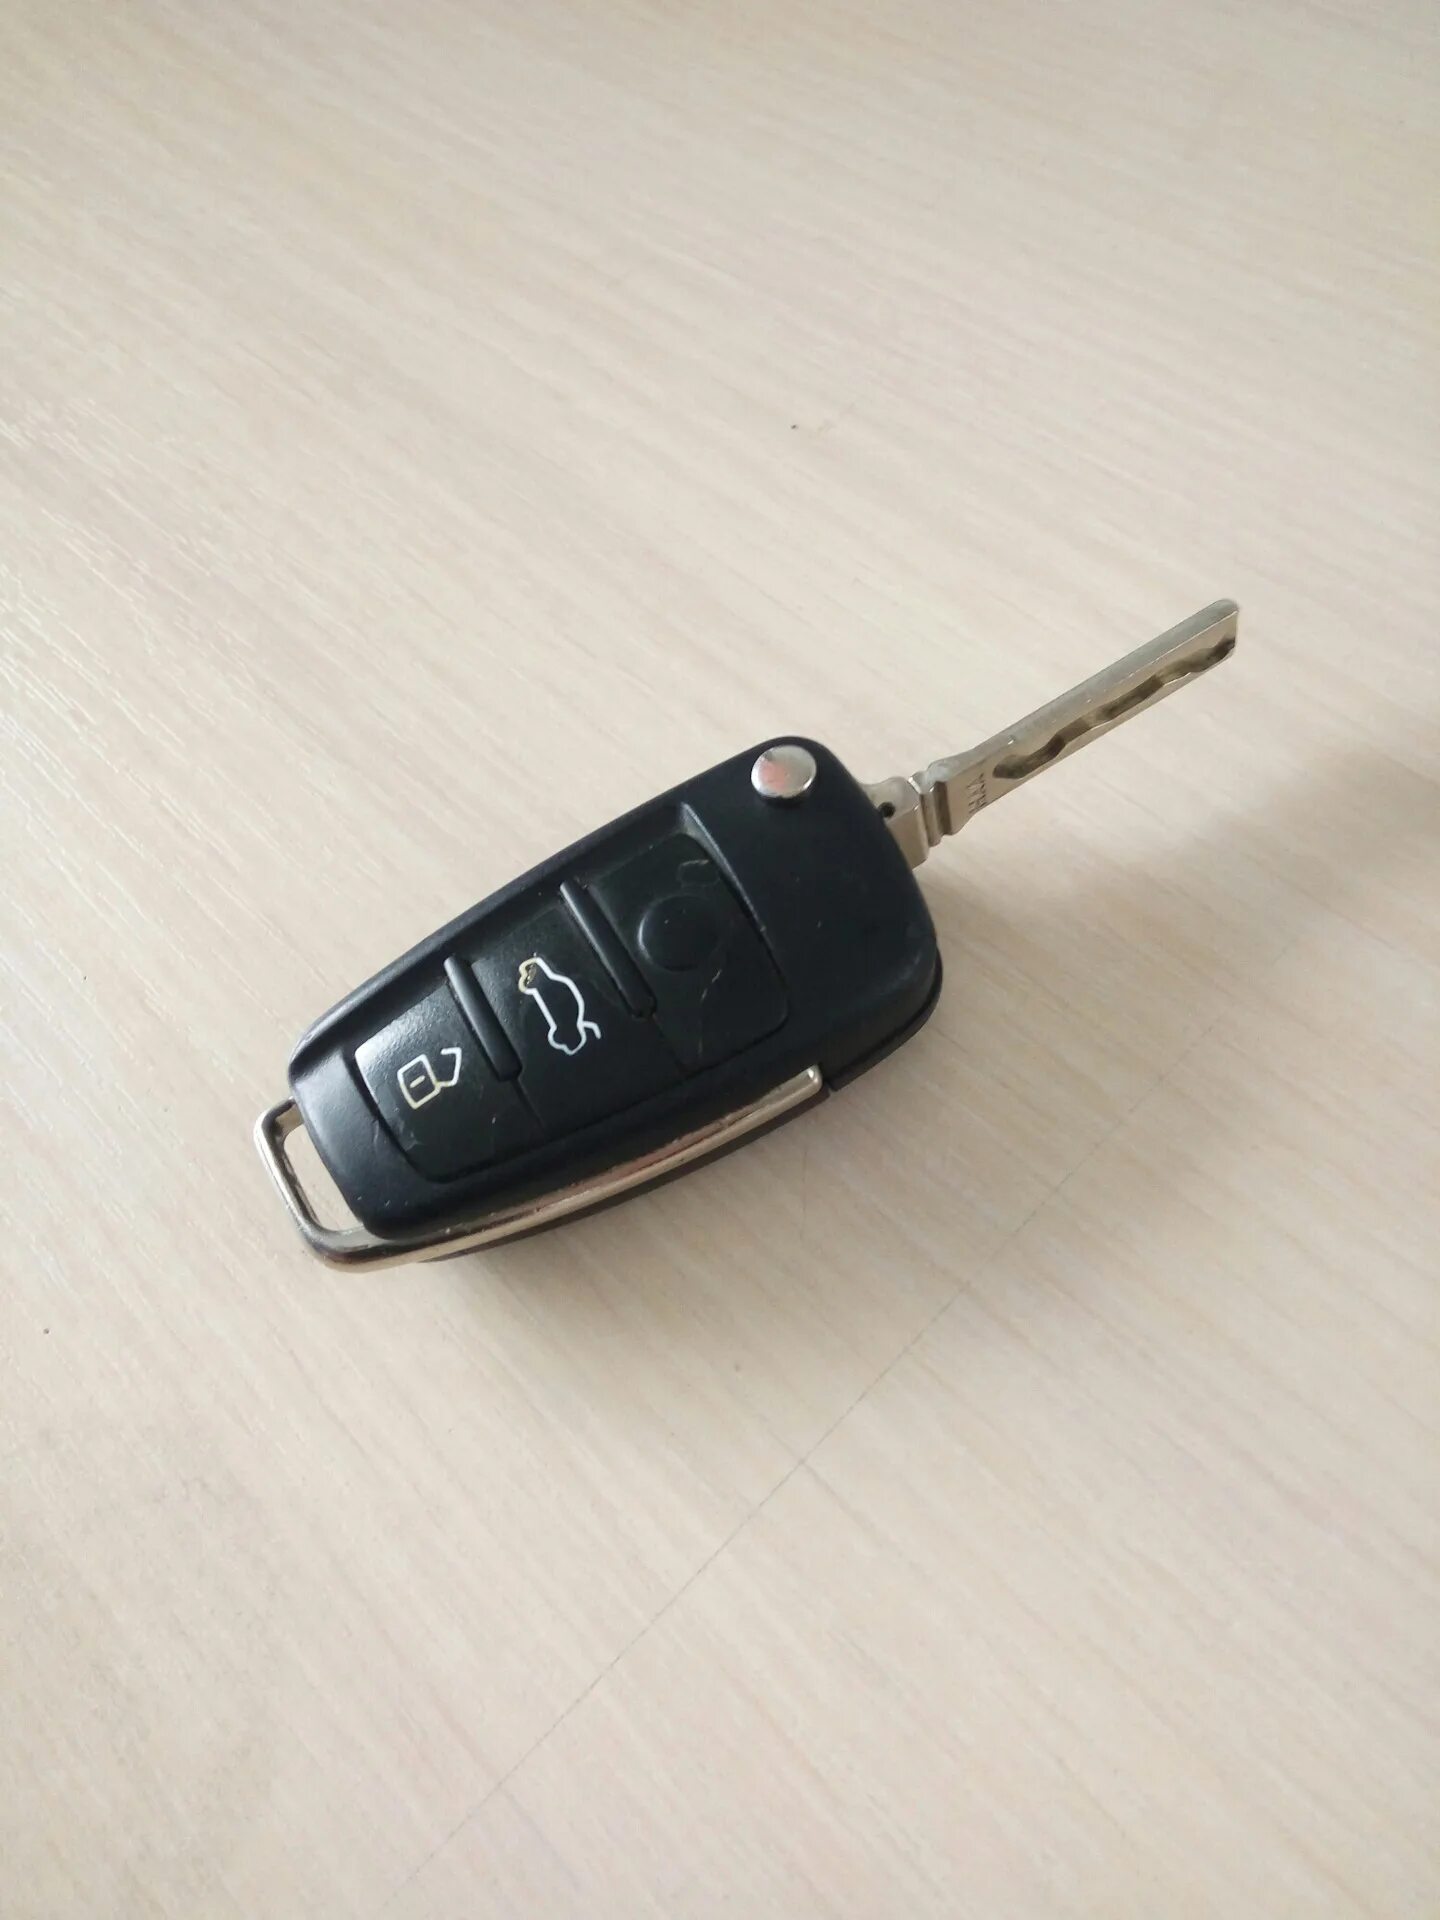 Ключи а6 с5. Ауди а6 с5 ключ зажигания выкидной. Выкидной ключ Ауди а6 с4. Audi a6 c5 avant ключ. Audi a6 c6 Key.